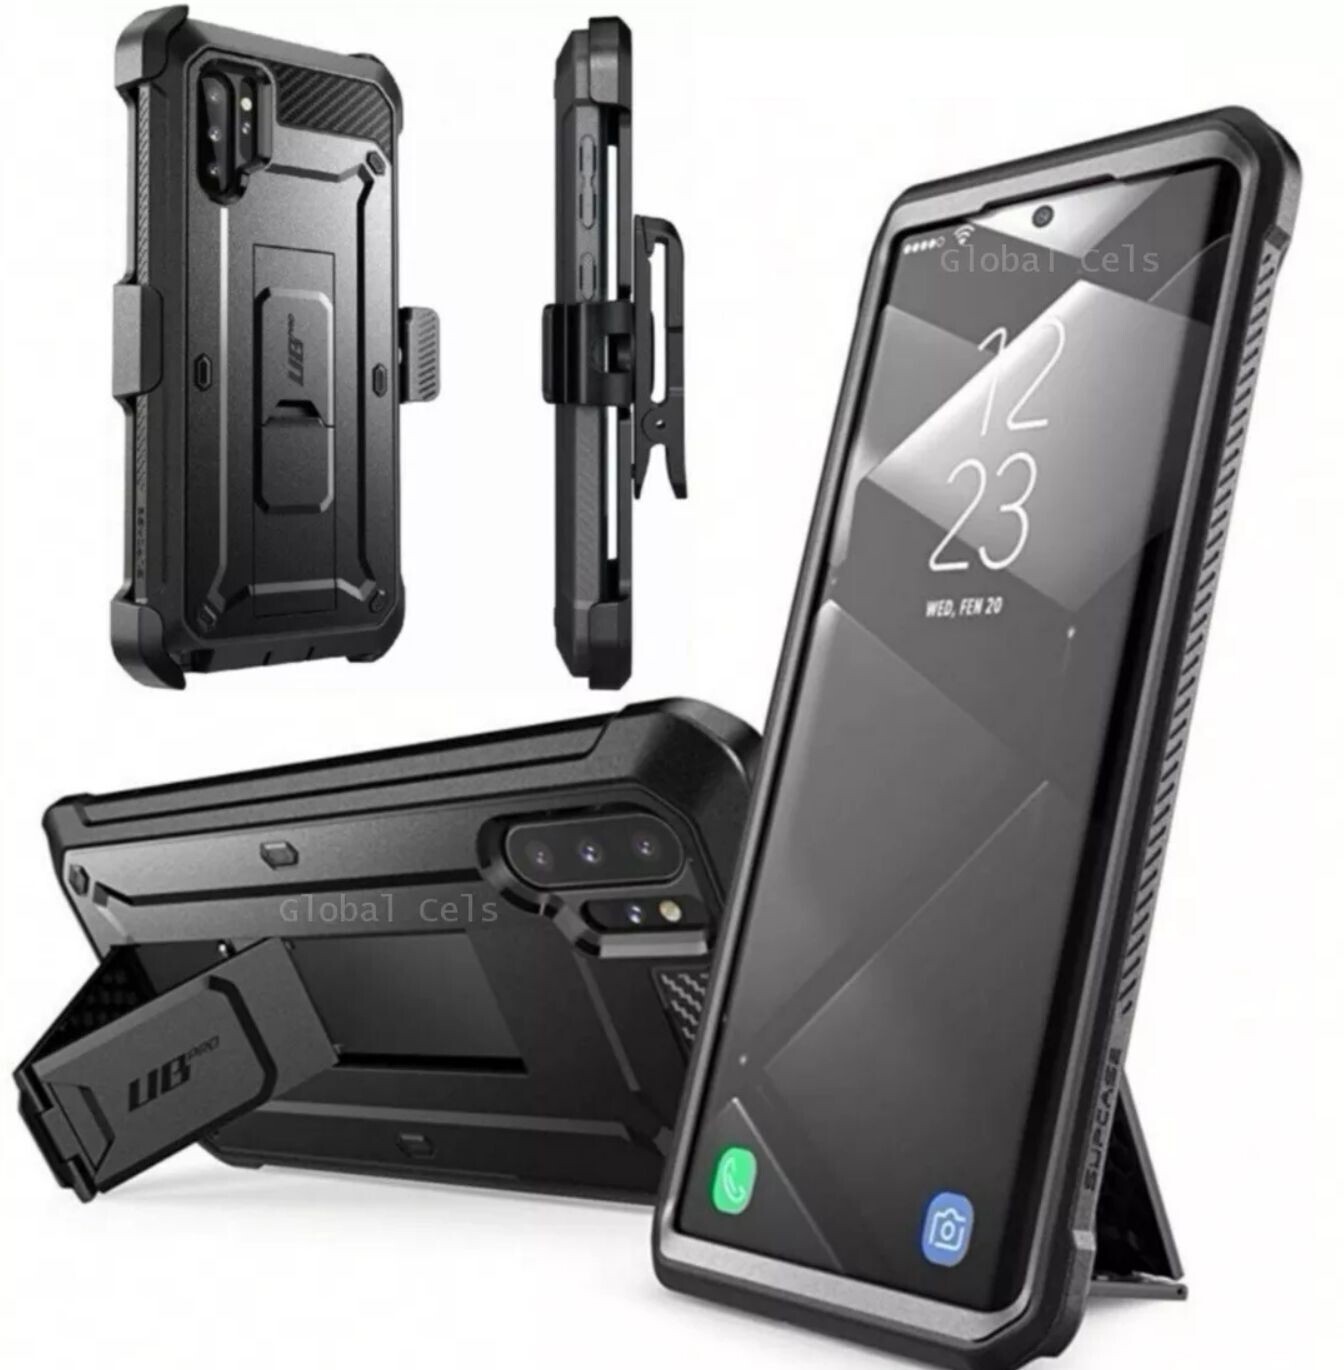 Case Galaxy Note 10 Plus / Note 10 Super Protector c/ Gancho c/ Parador Funda 360°